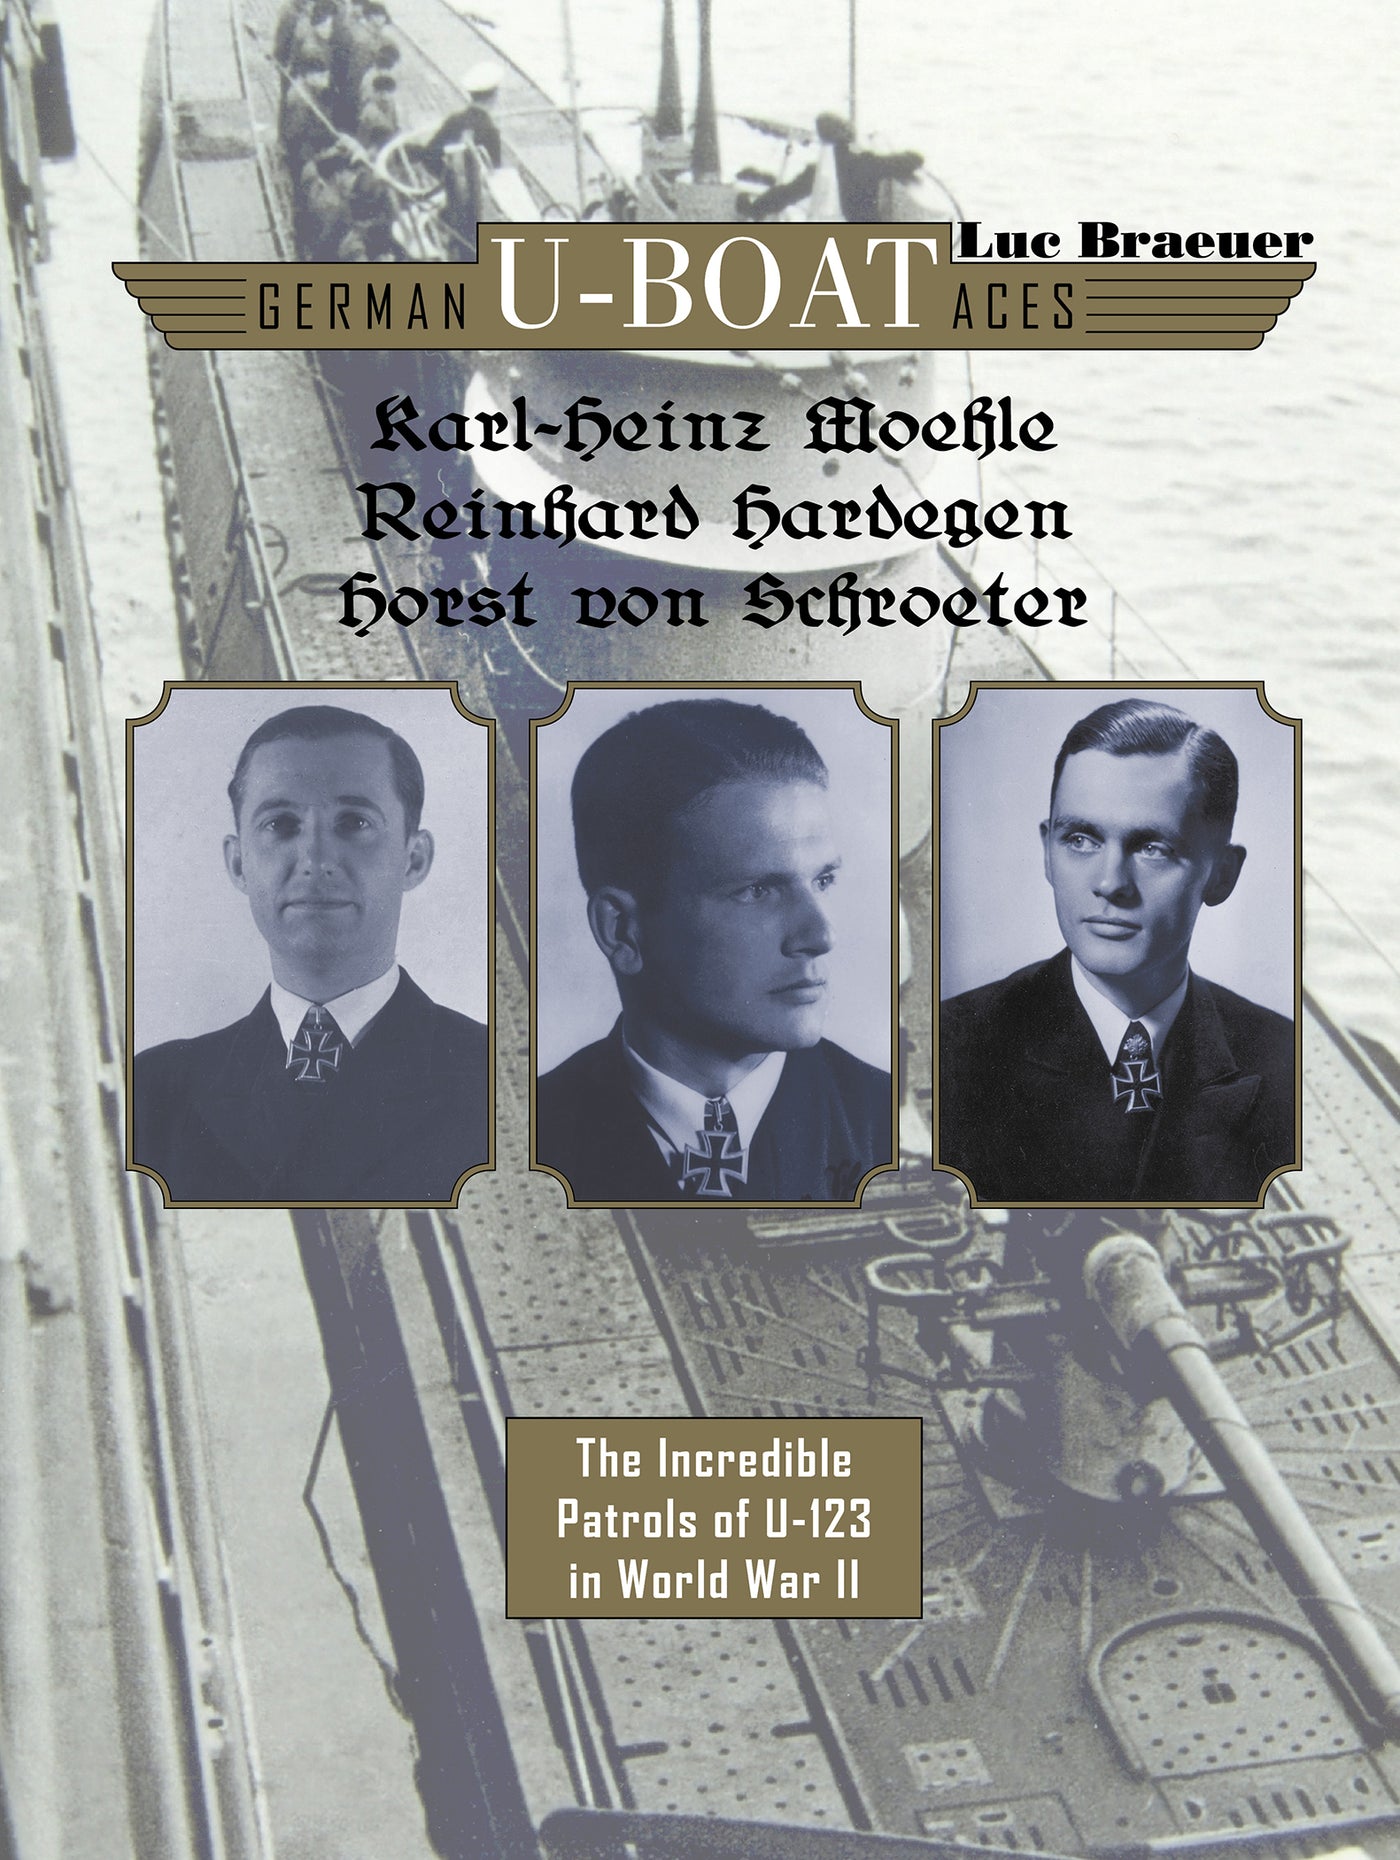 German U-boat Aces Karl-Heinz Moehle, Reinhard Hardegen & Horst von Schroeter